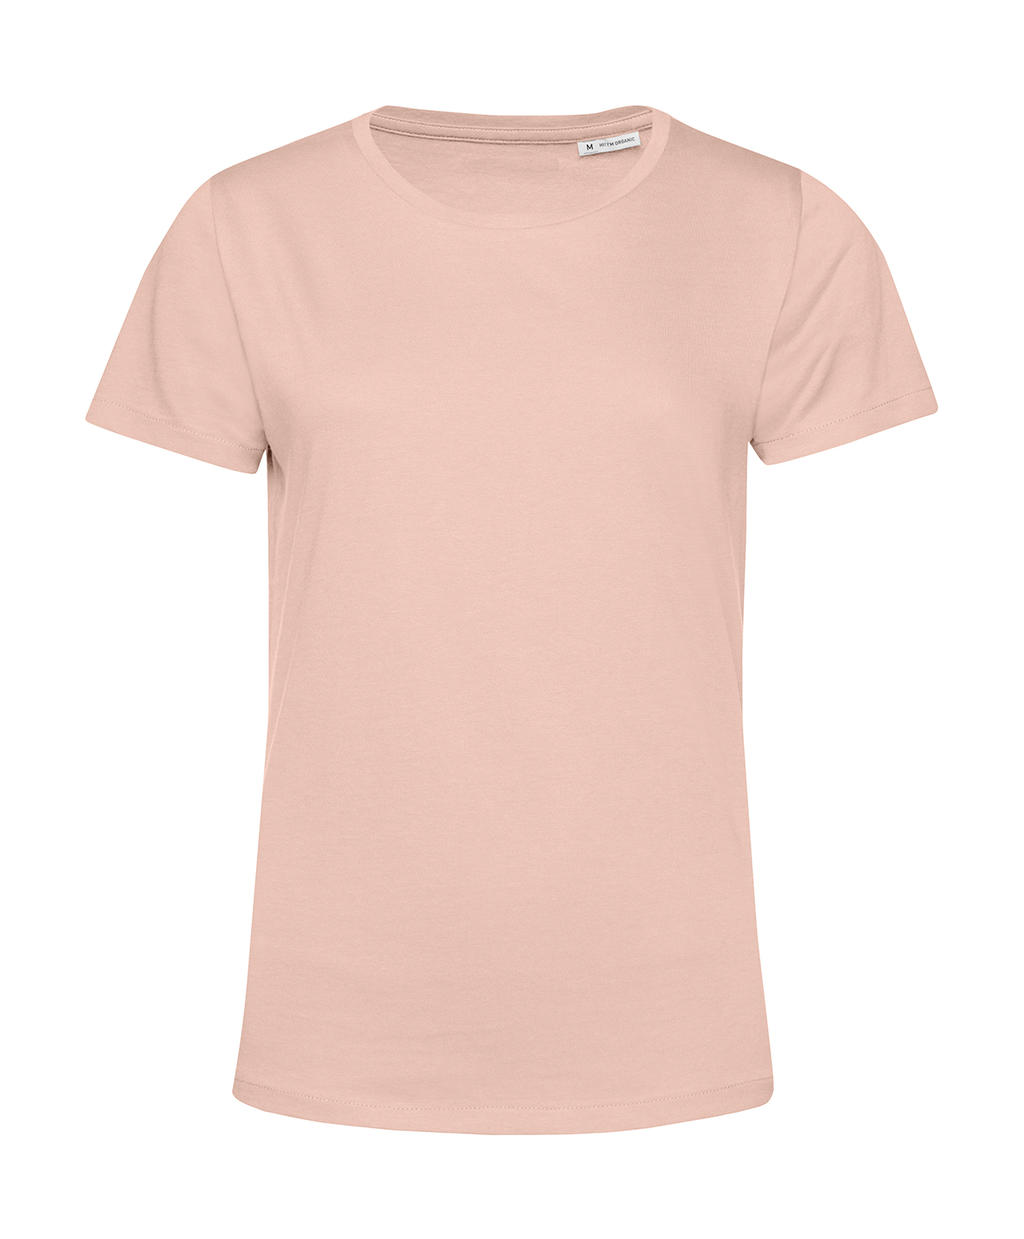 Tričko dámské BC Organic Inspire E150 - světle růžové, M